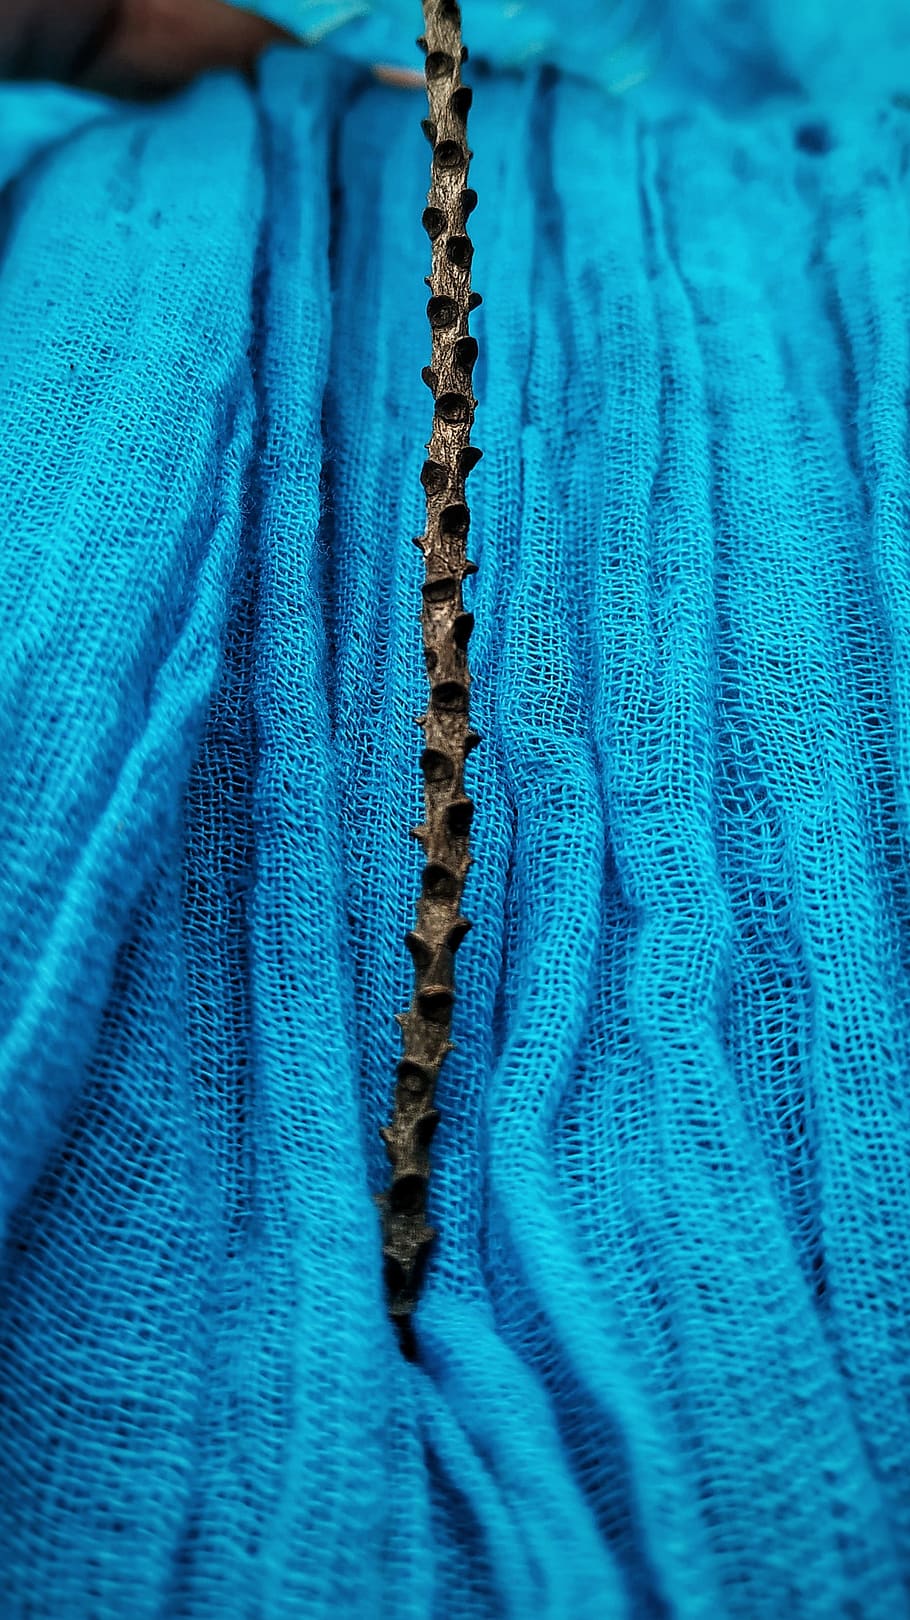 tecido, azul, algodão, aqua, planta, marrom, varinha, têxtil, quadro completo, planos de fundo